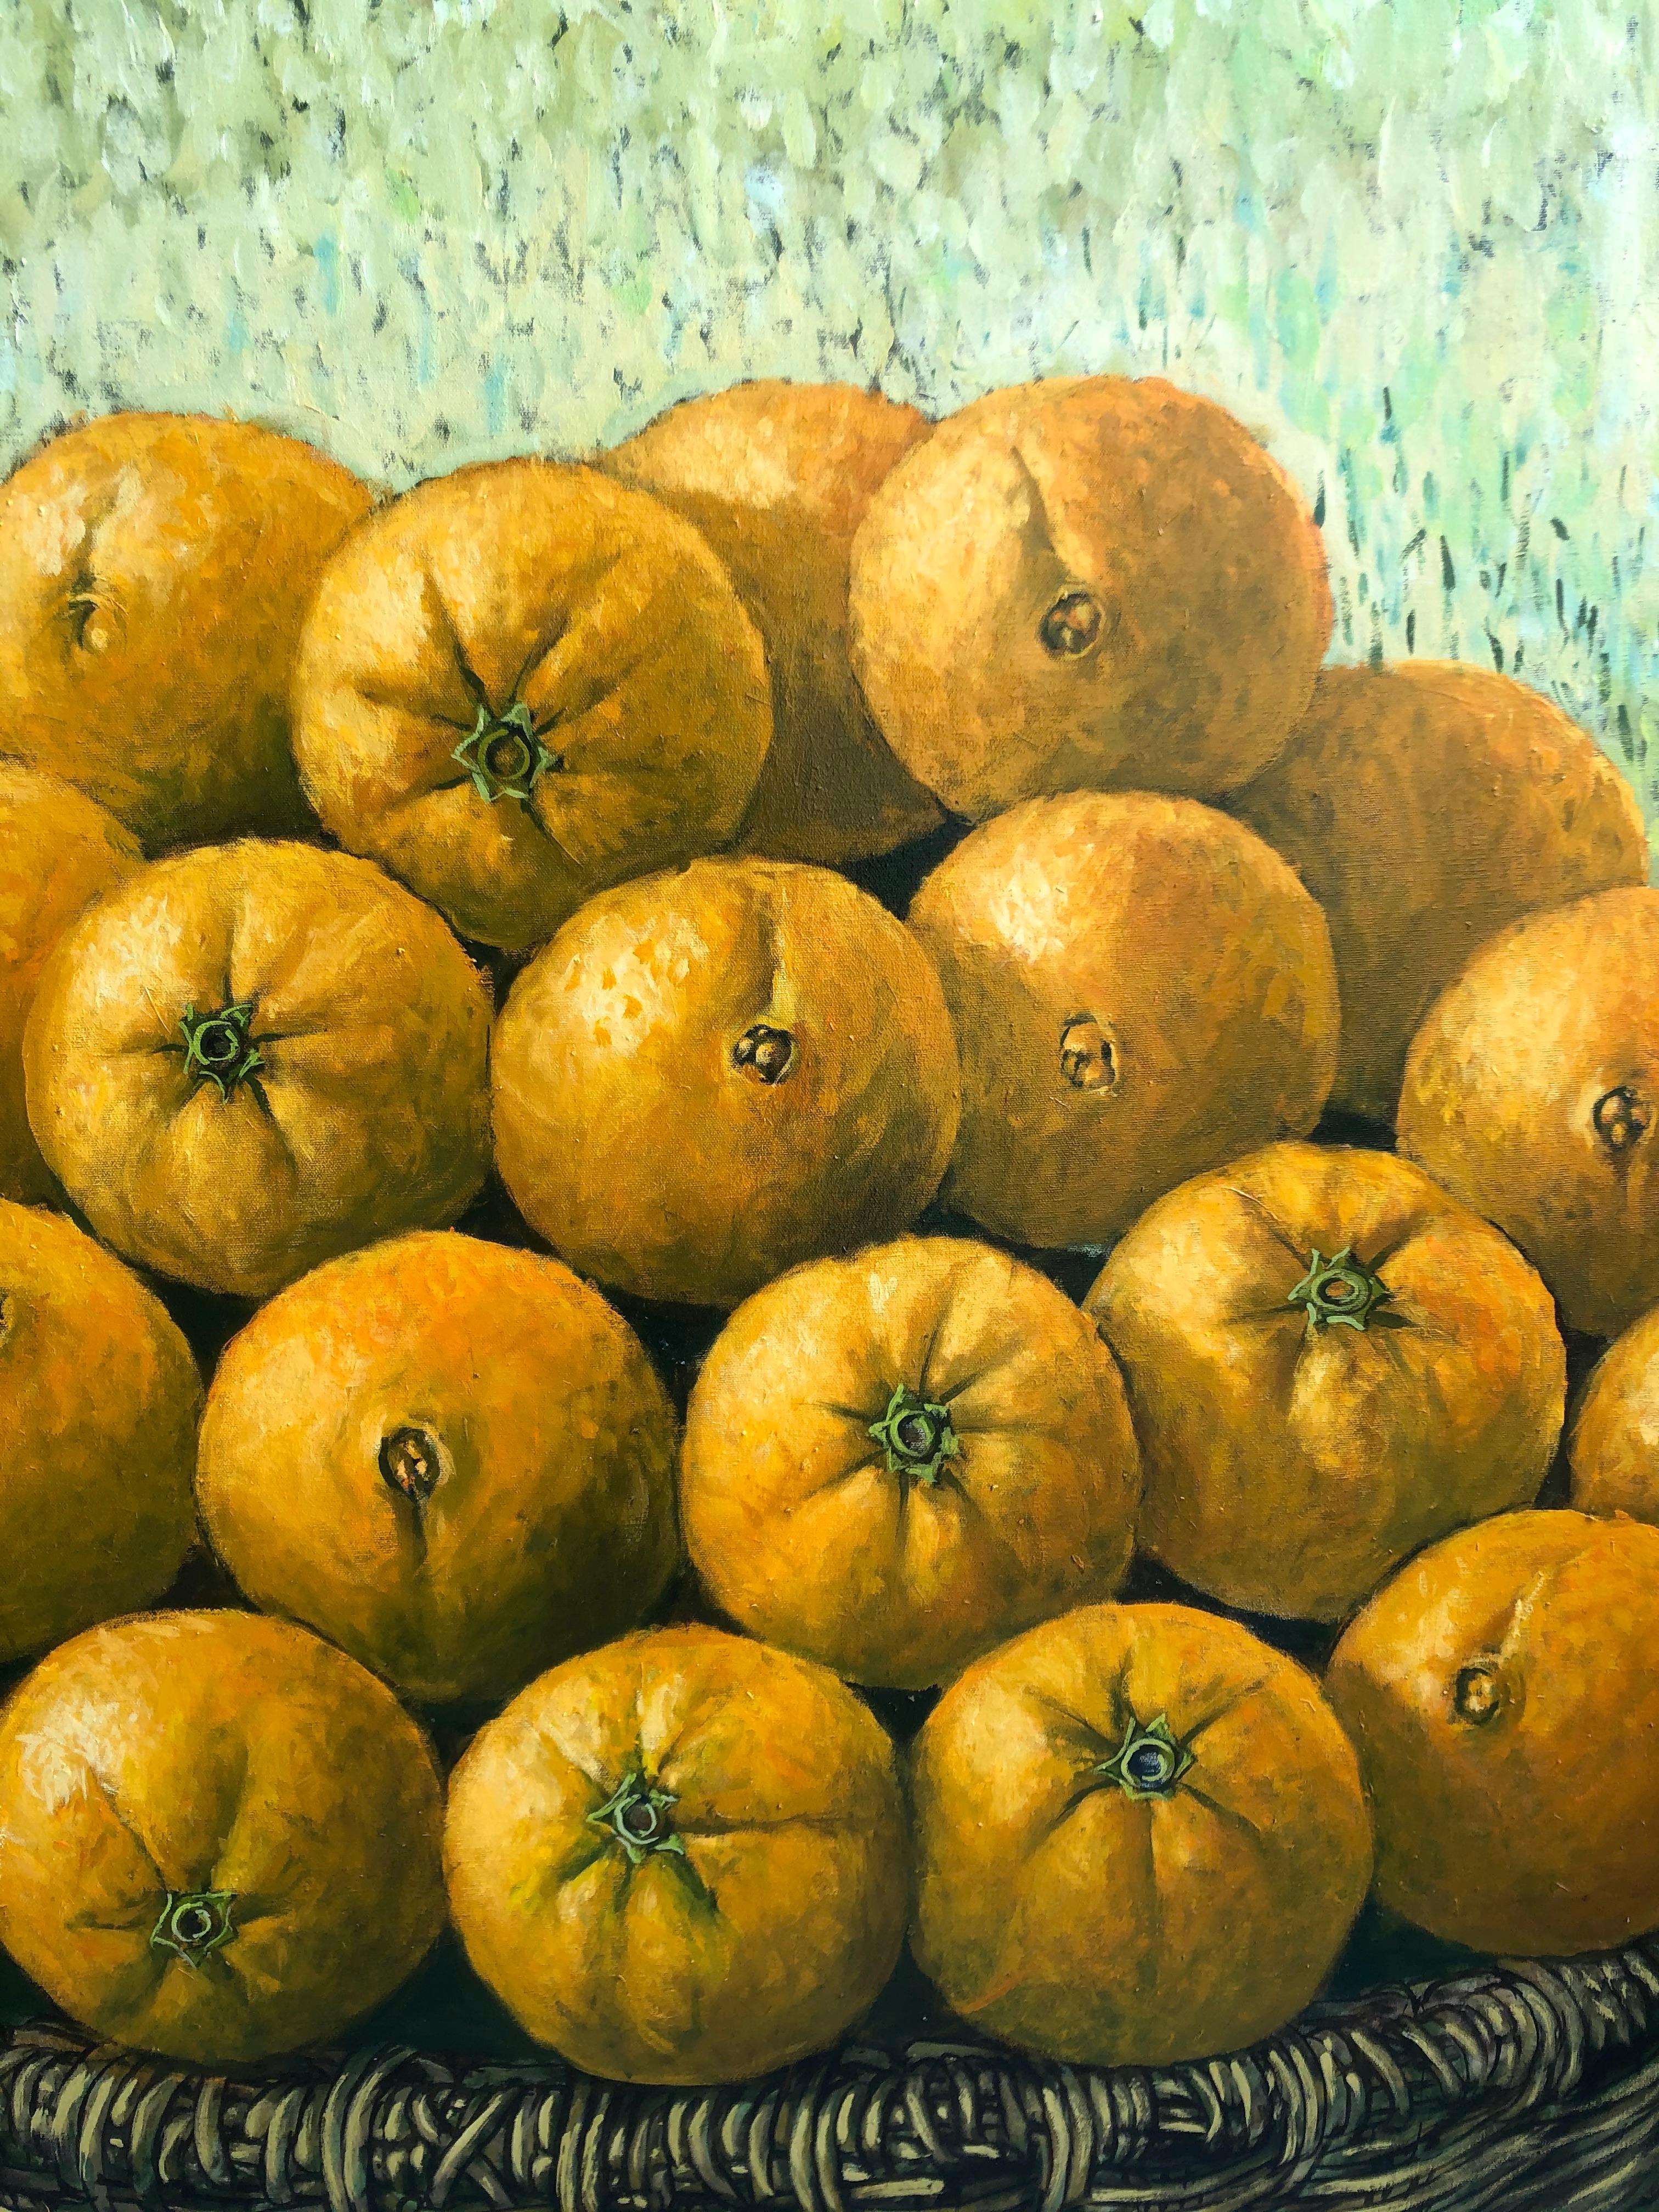  Les oranges dans le panier   - Painting de Rafael Saldarriaga